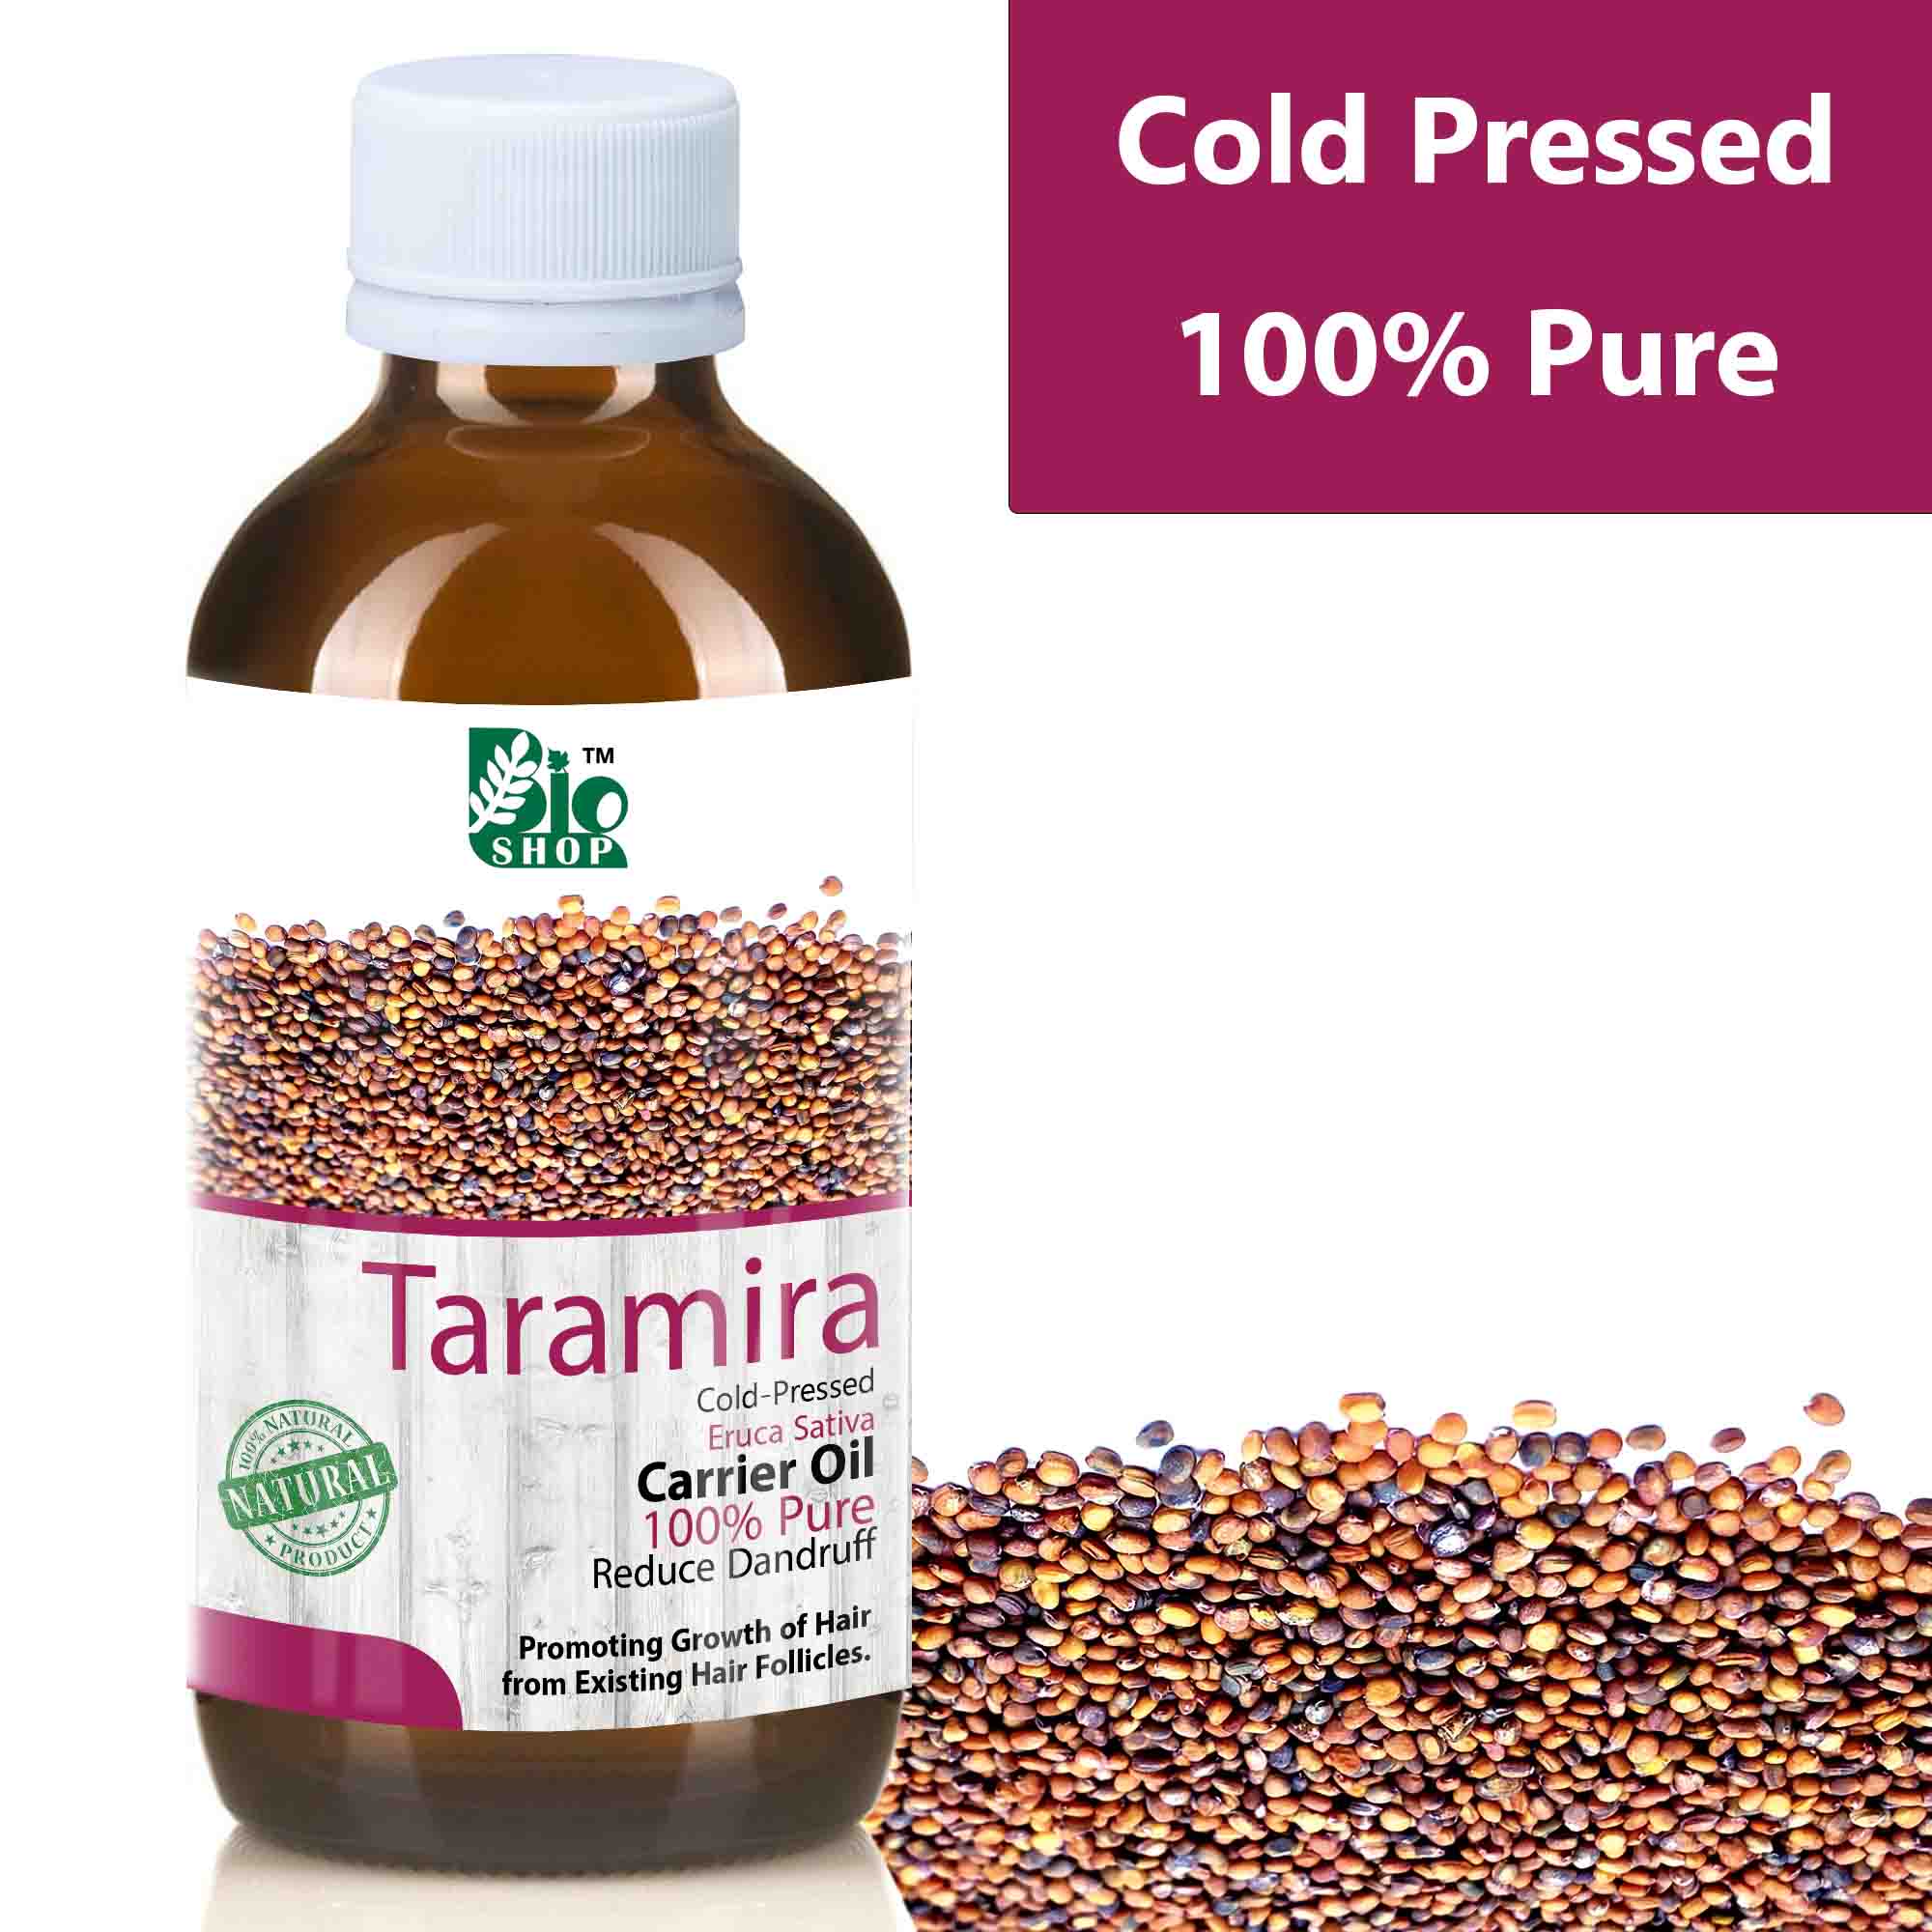 Is Taramira Oil Good For Face